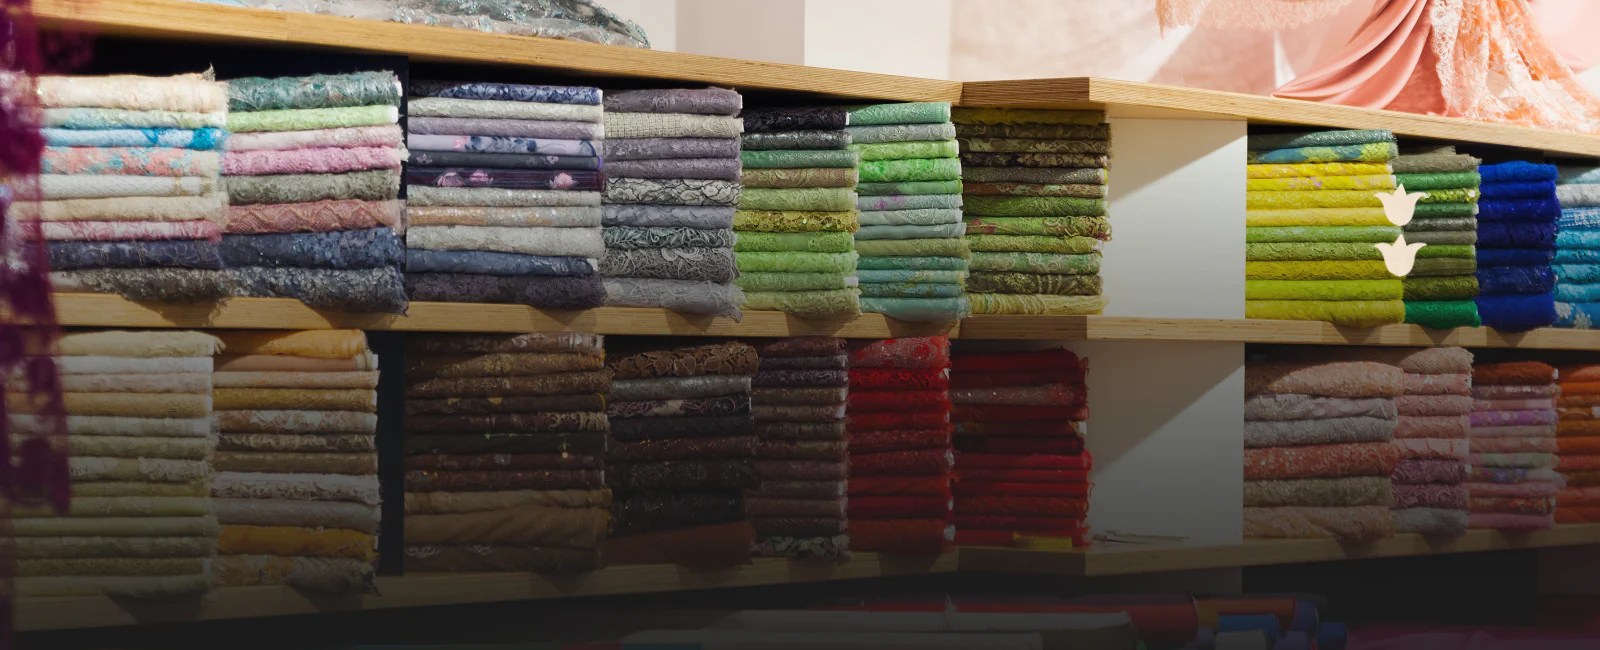 Where Do Designers Buy Their Fabric